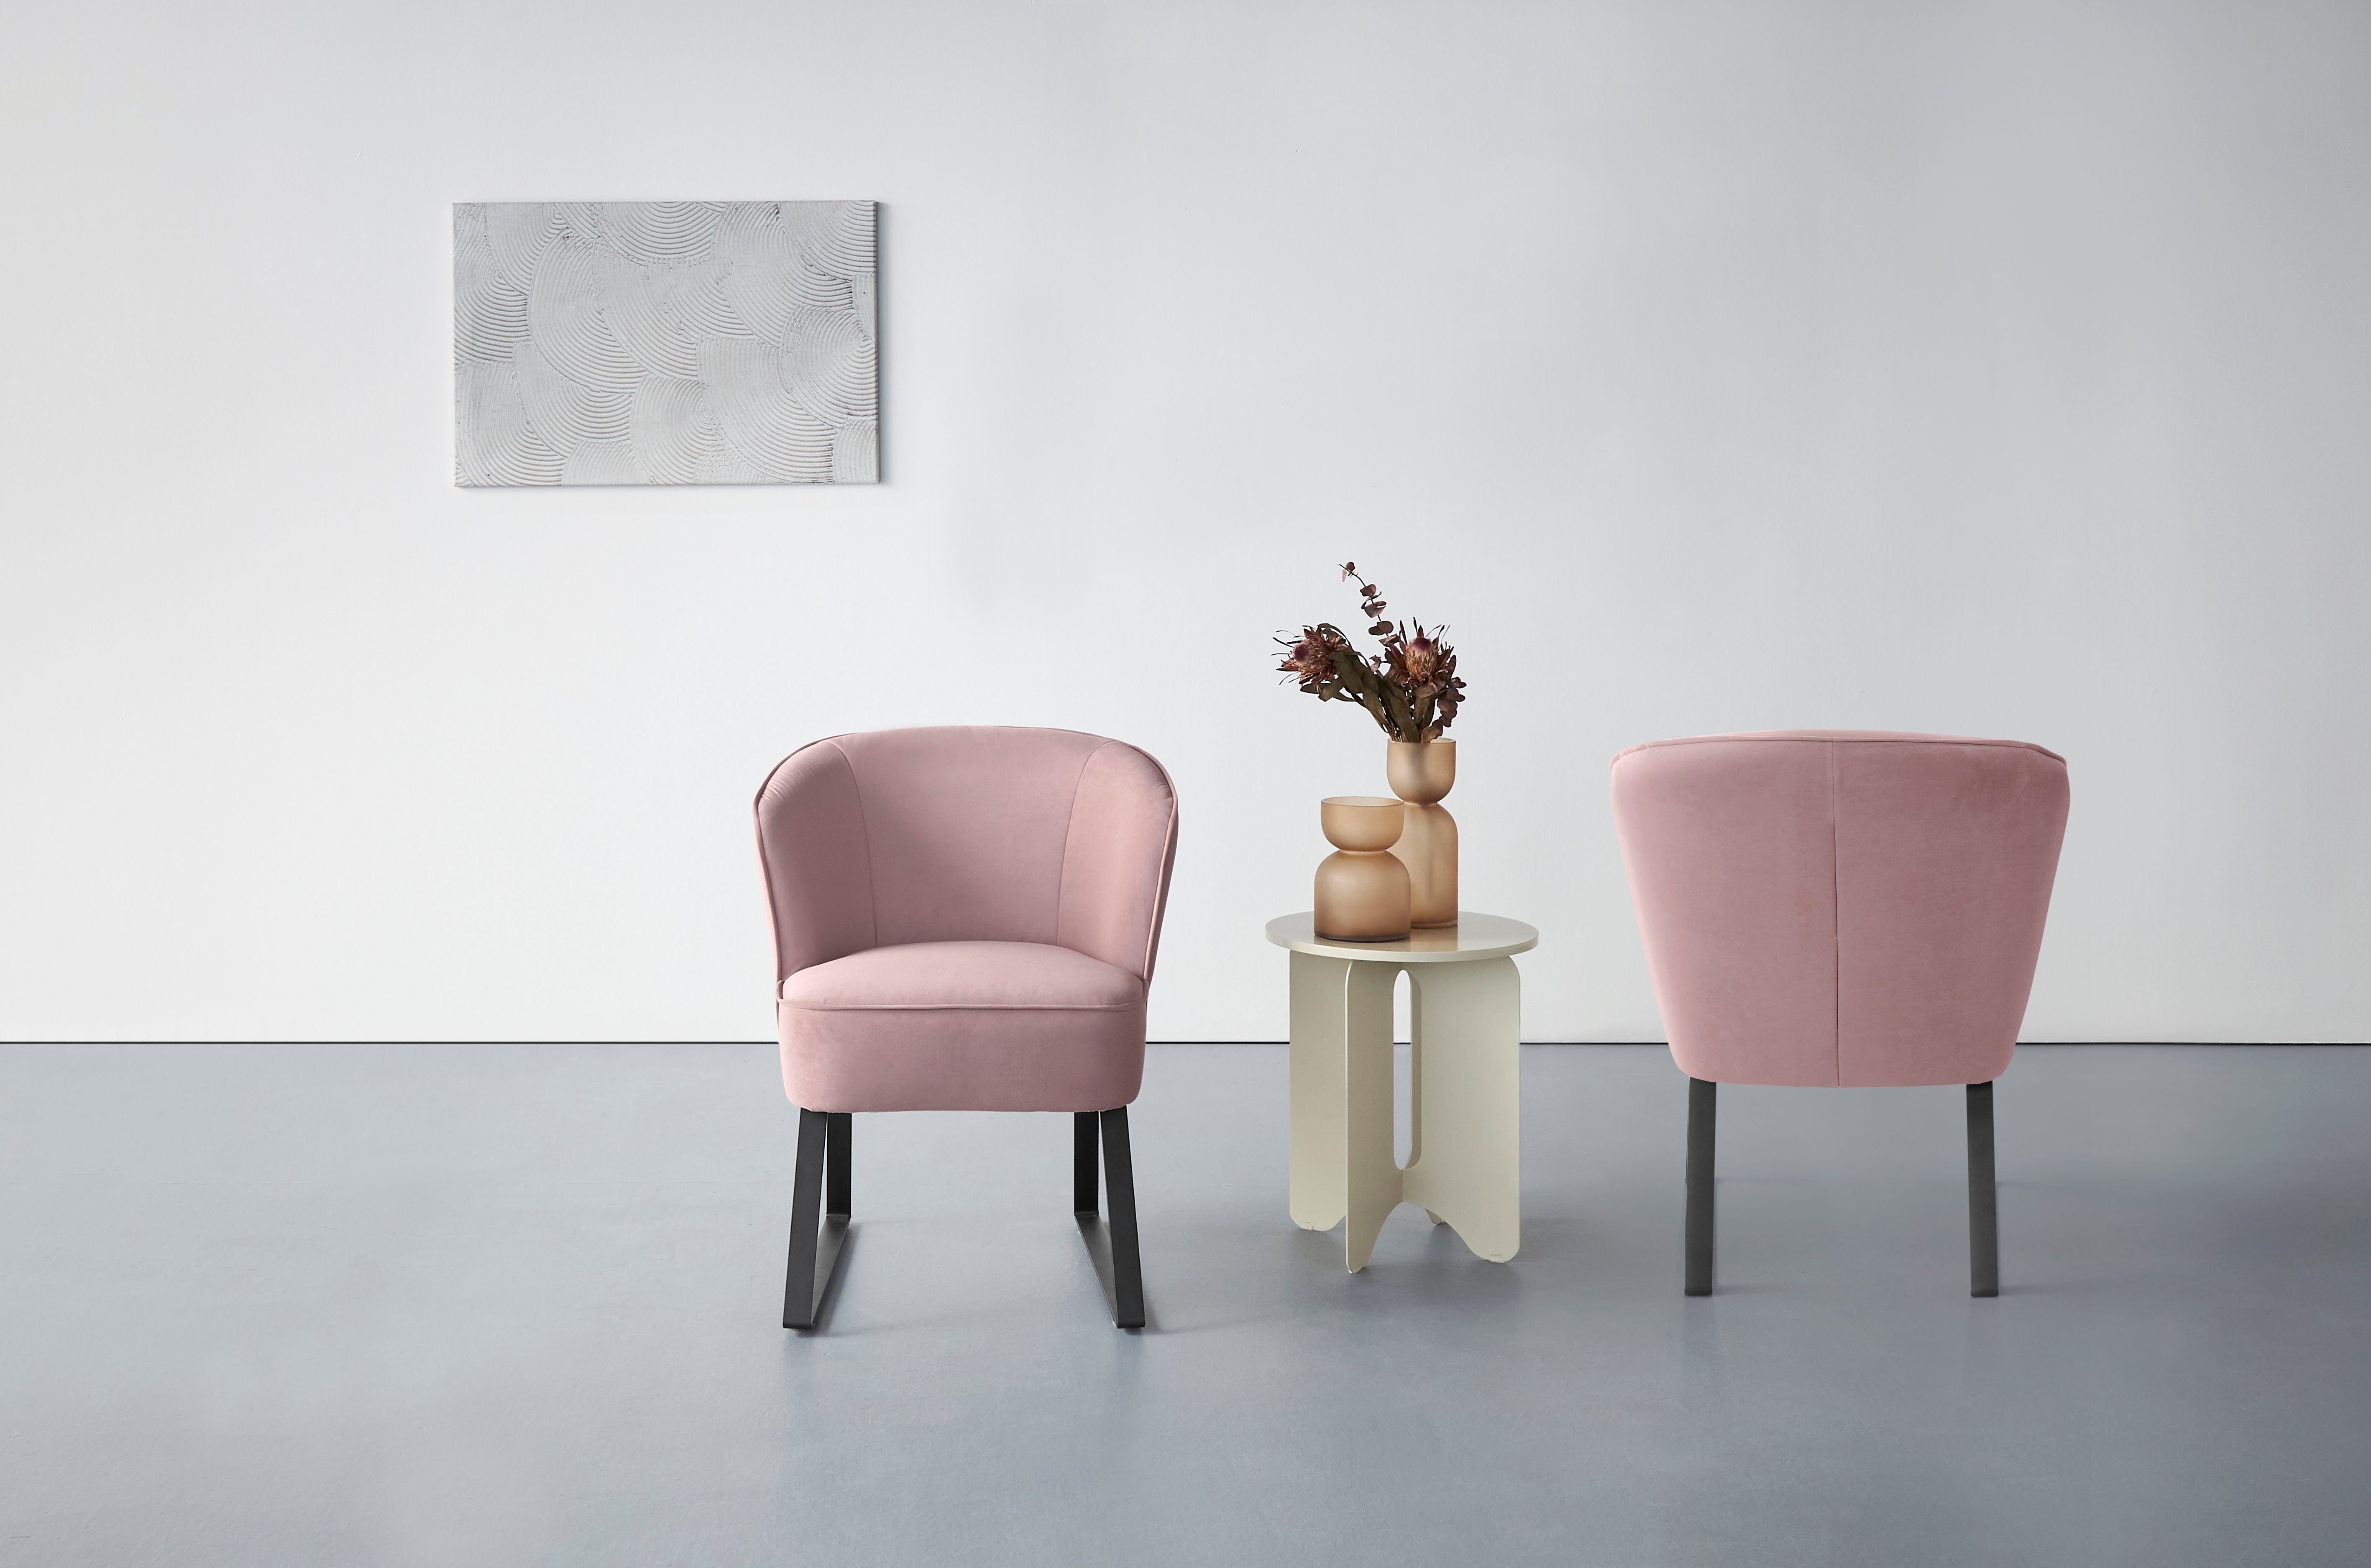 exxpo - in Metallfüßen, Americano, Bezug 1 fashion Keder Qualitäten, verschiedenen Sessel und mit Stck. sofa